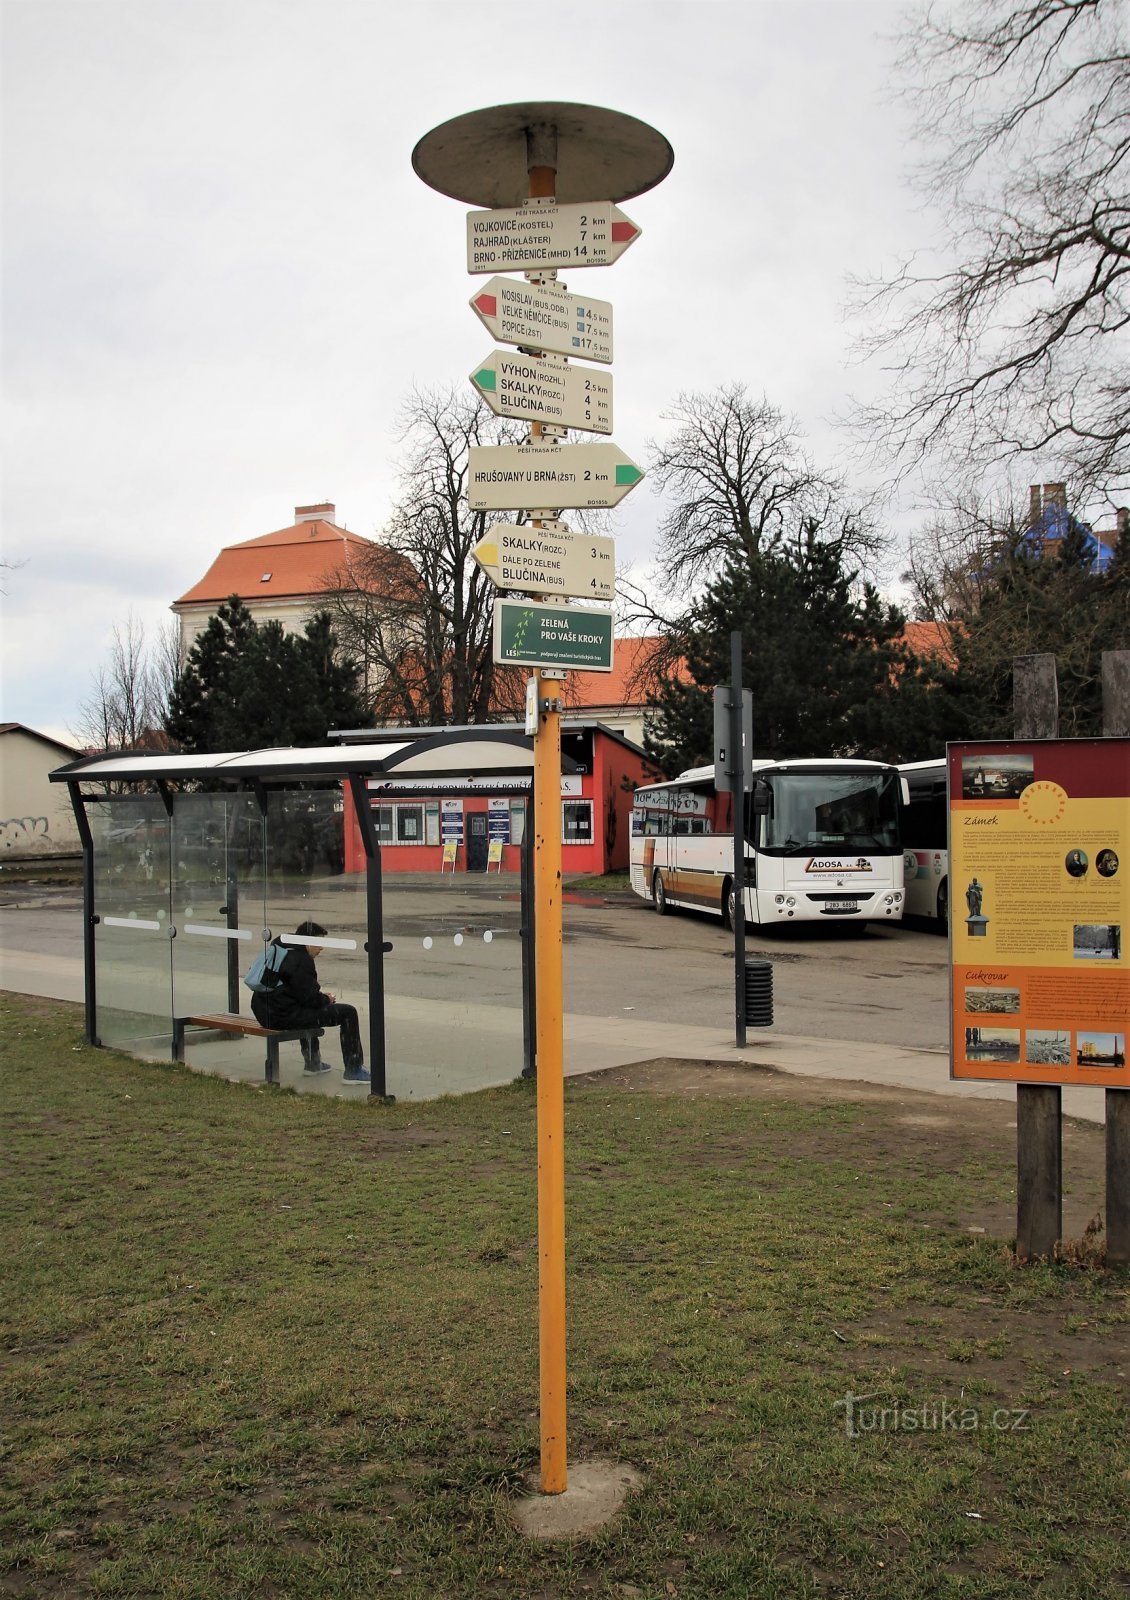 バス停での観光ガイド